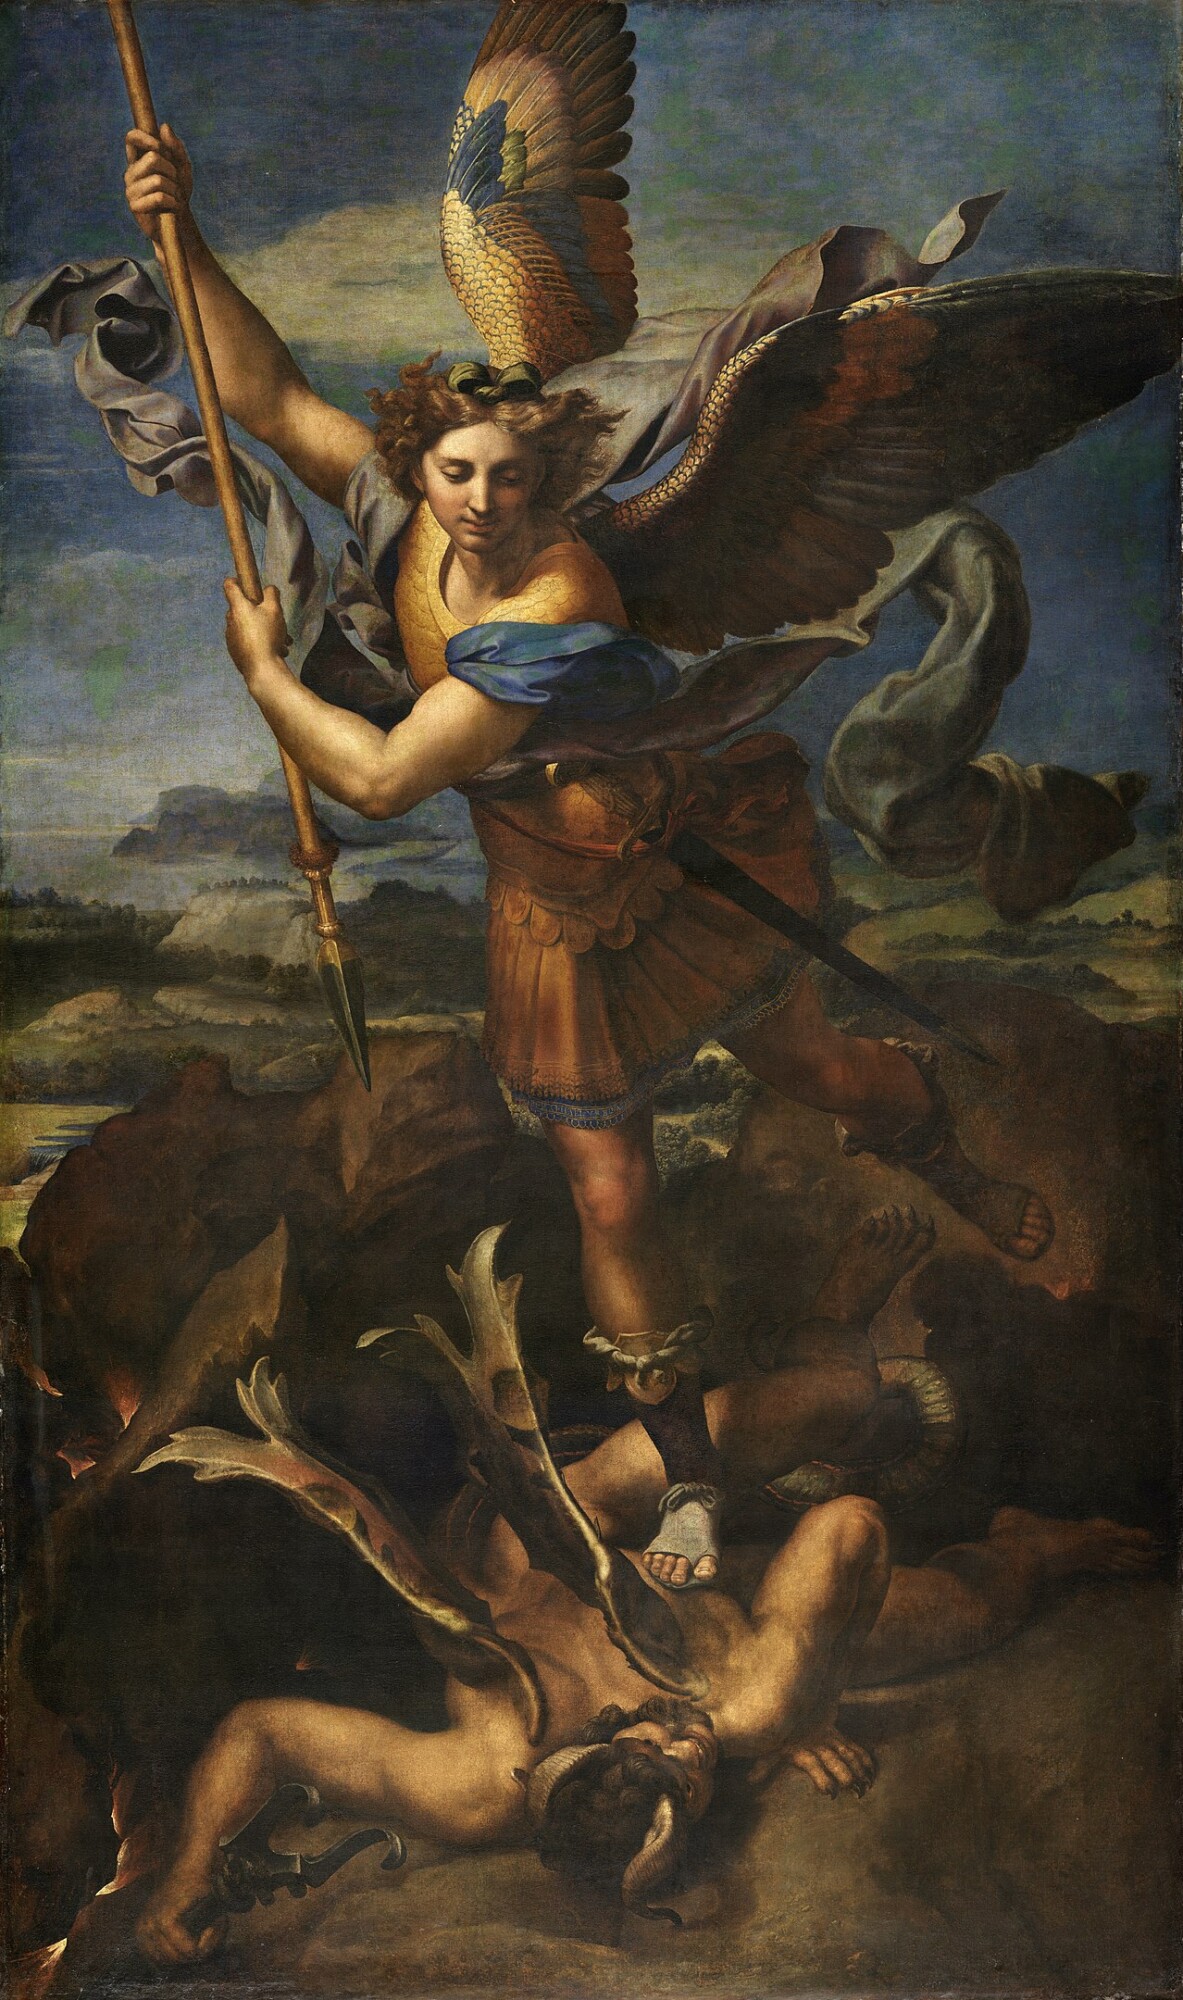 Thánh Michael diệt rồng, một thông điệp phổ quát từ ngàn năm